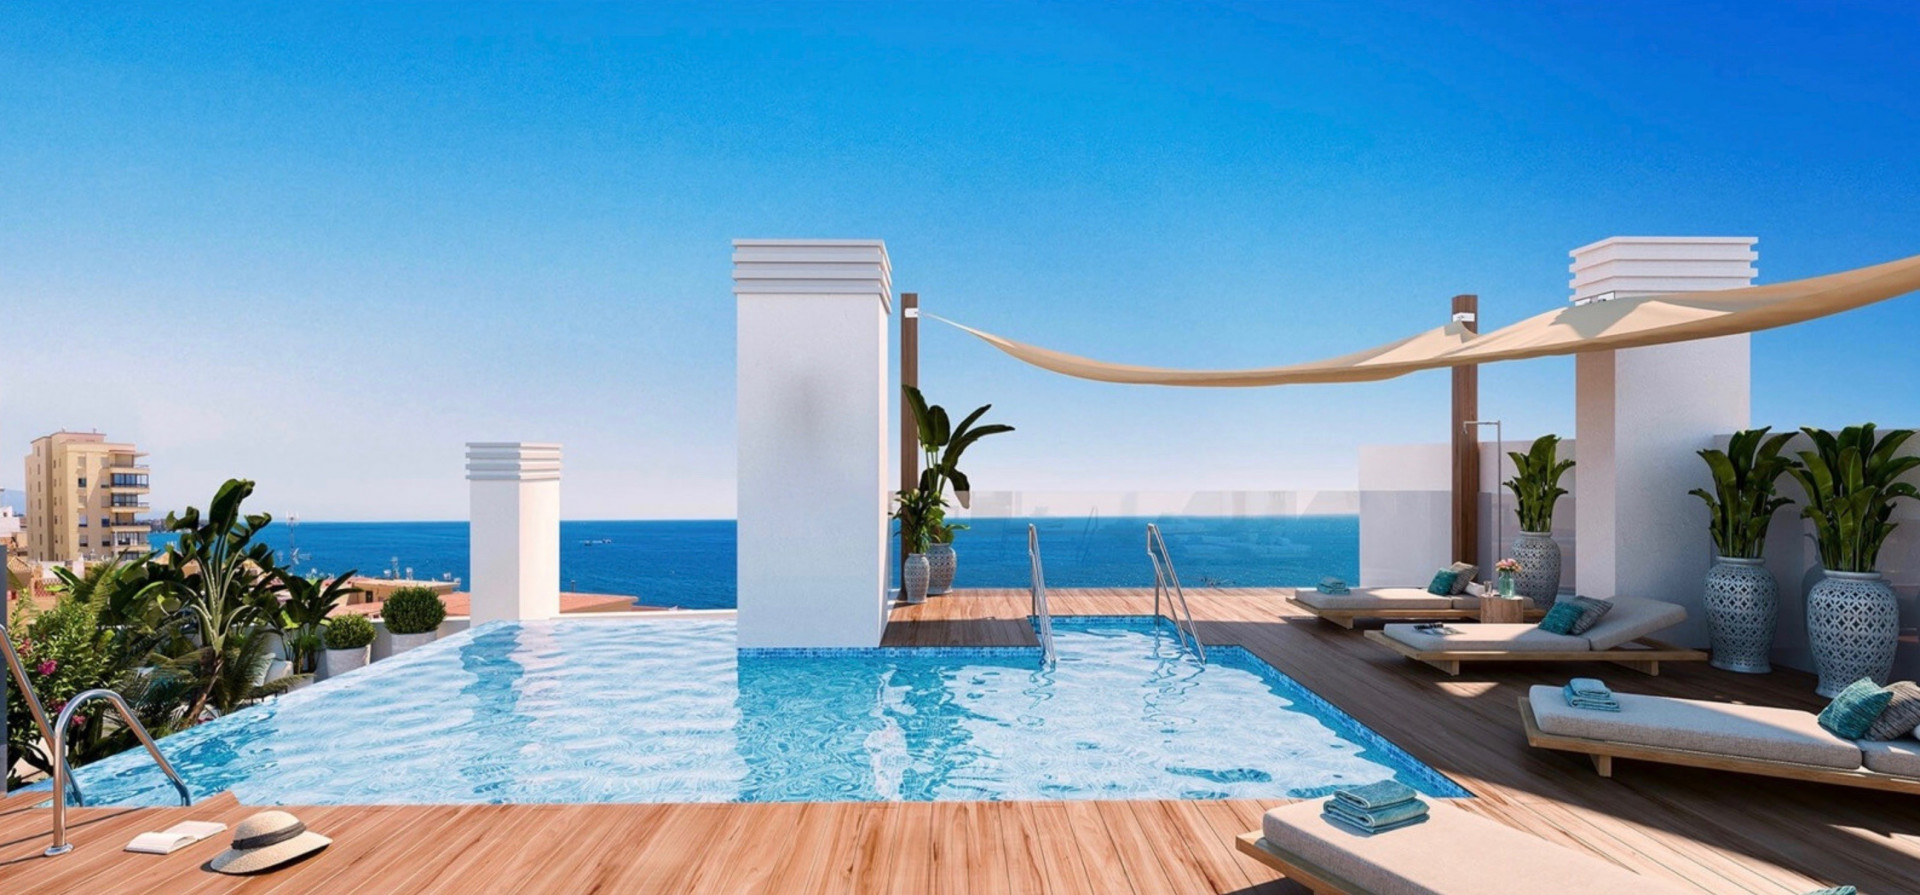 Maravillosa promoción residencial  situada en el centro de Estepona con espectaculares vistas al mar desde la piscina en la azotea